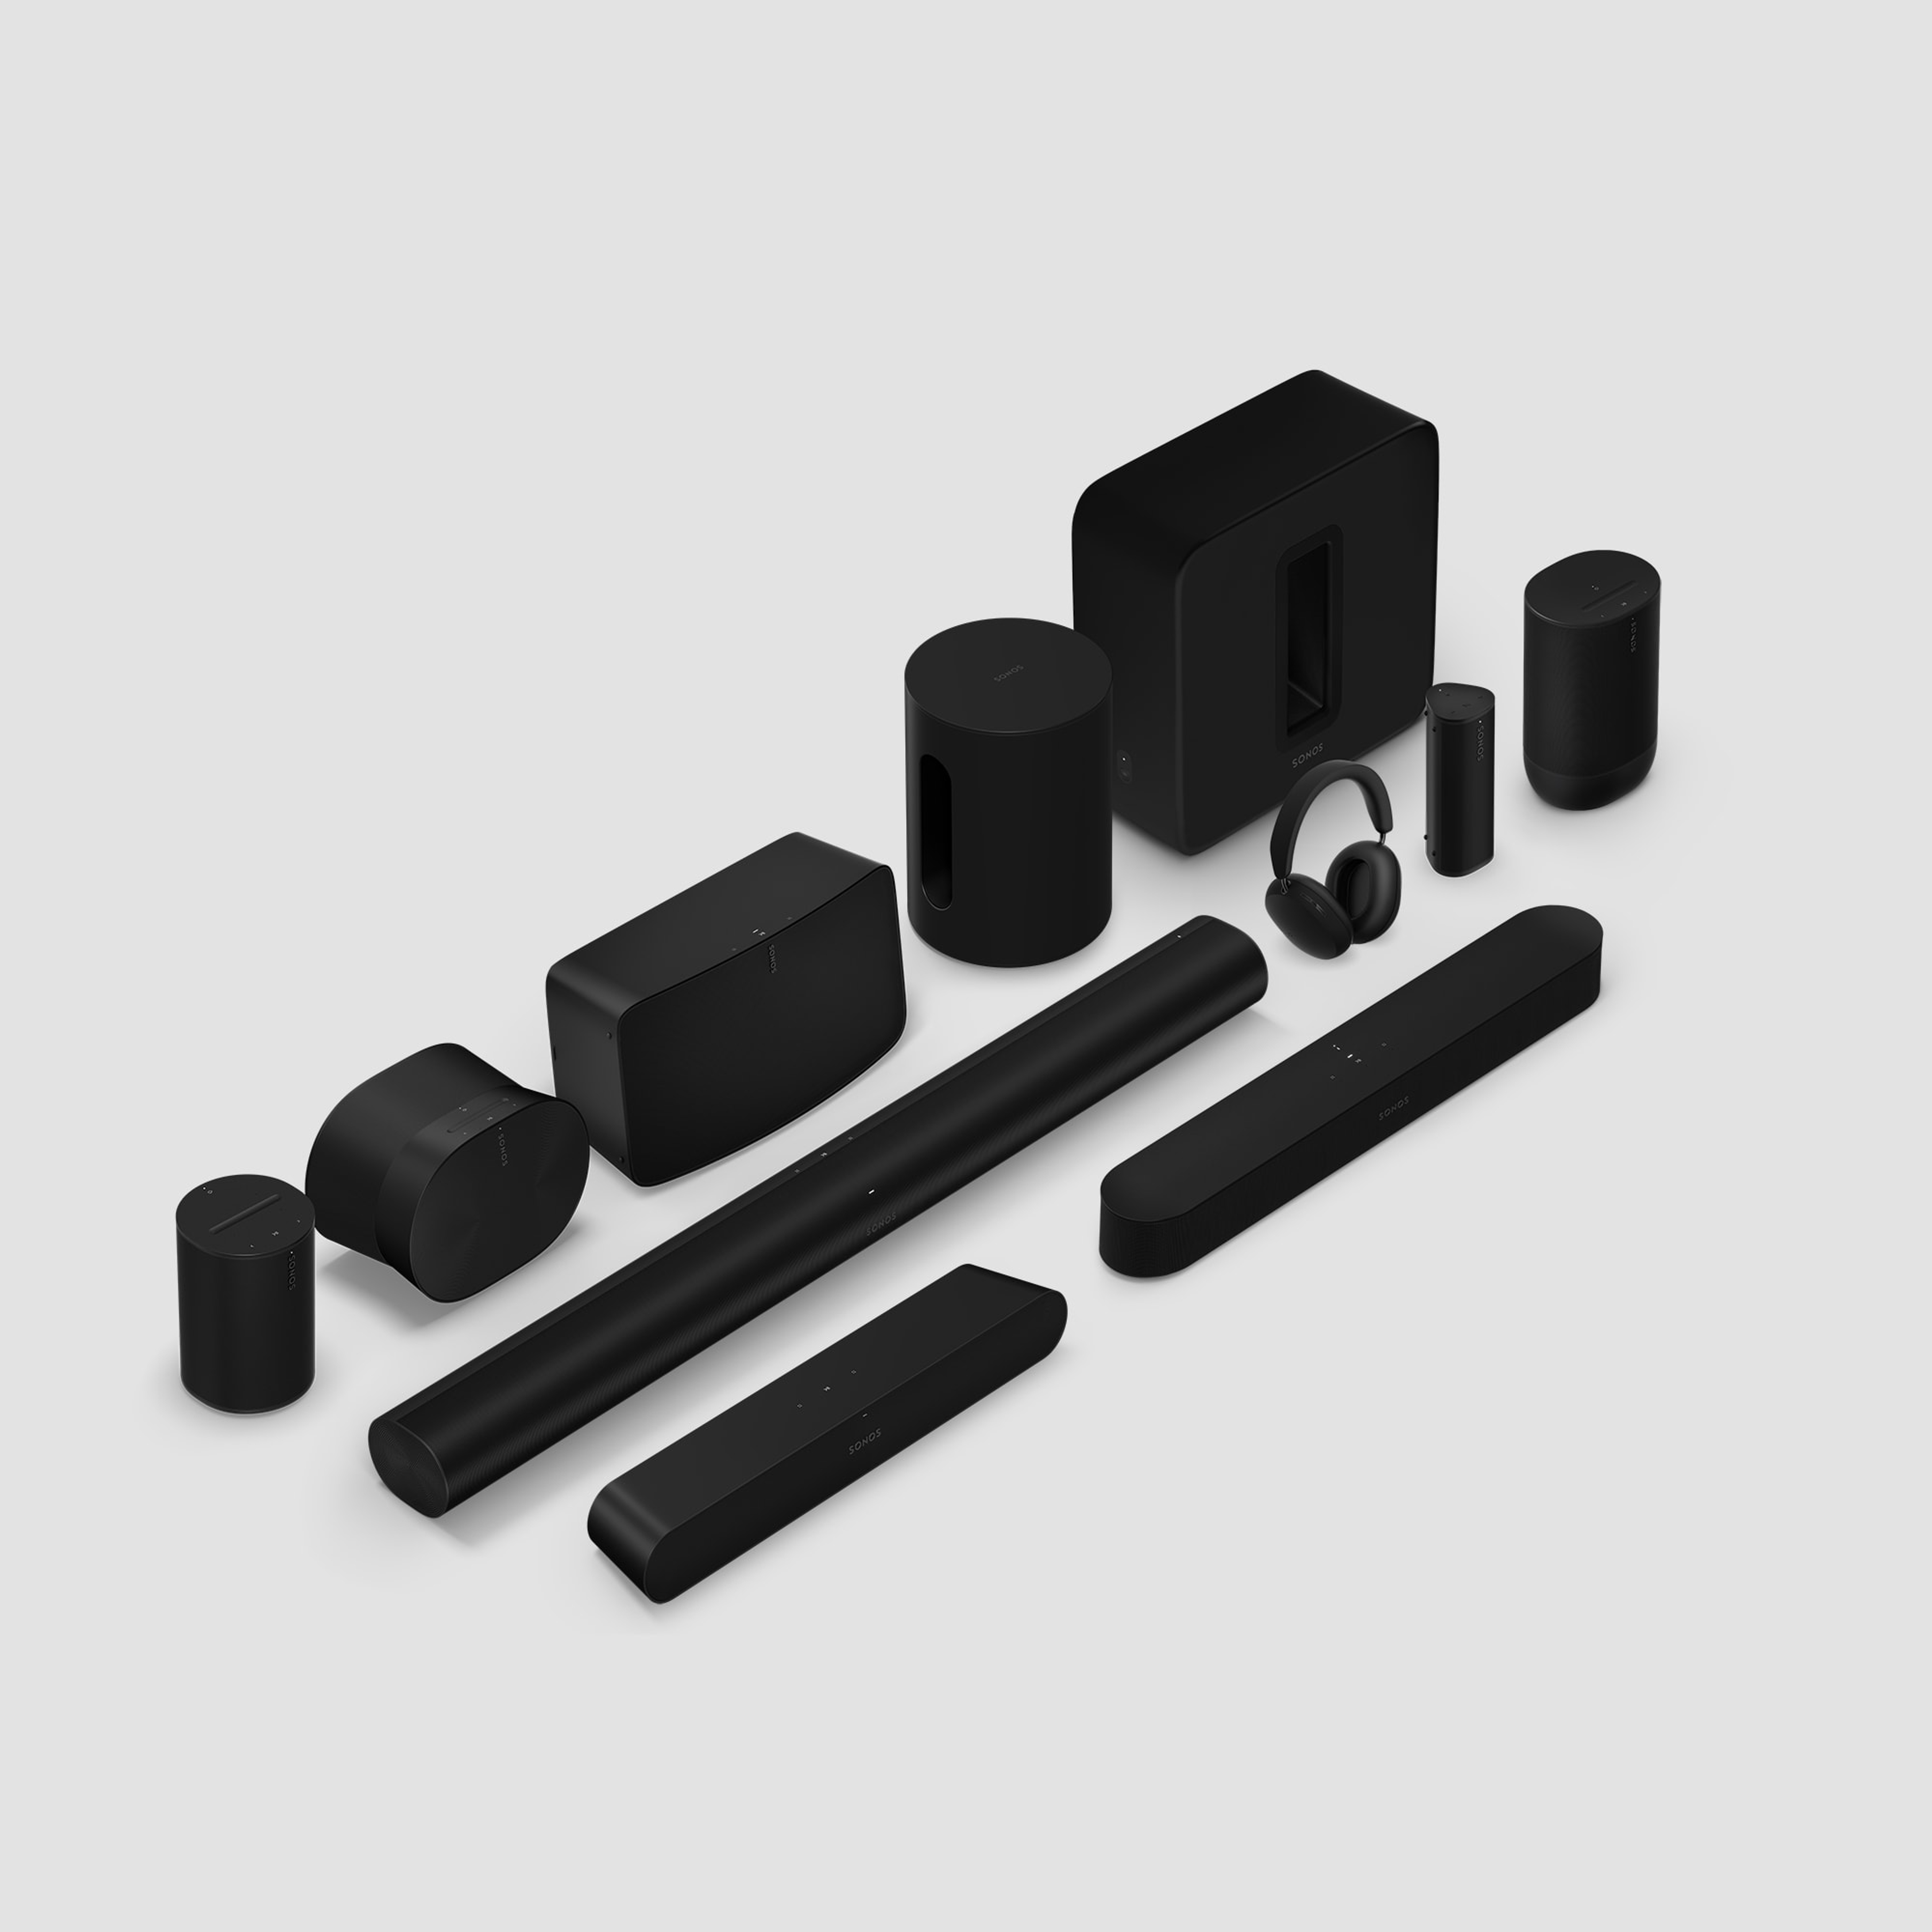 La gamme de produits Sonos en noir